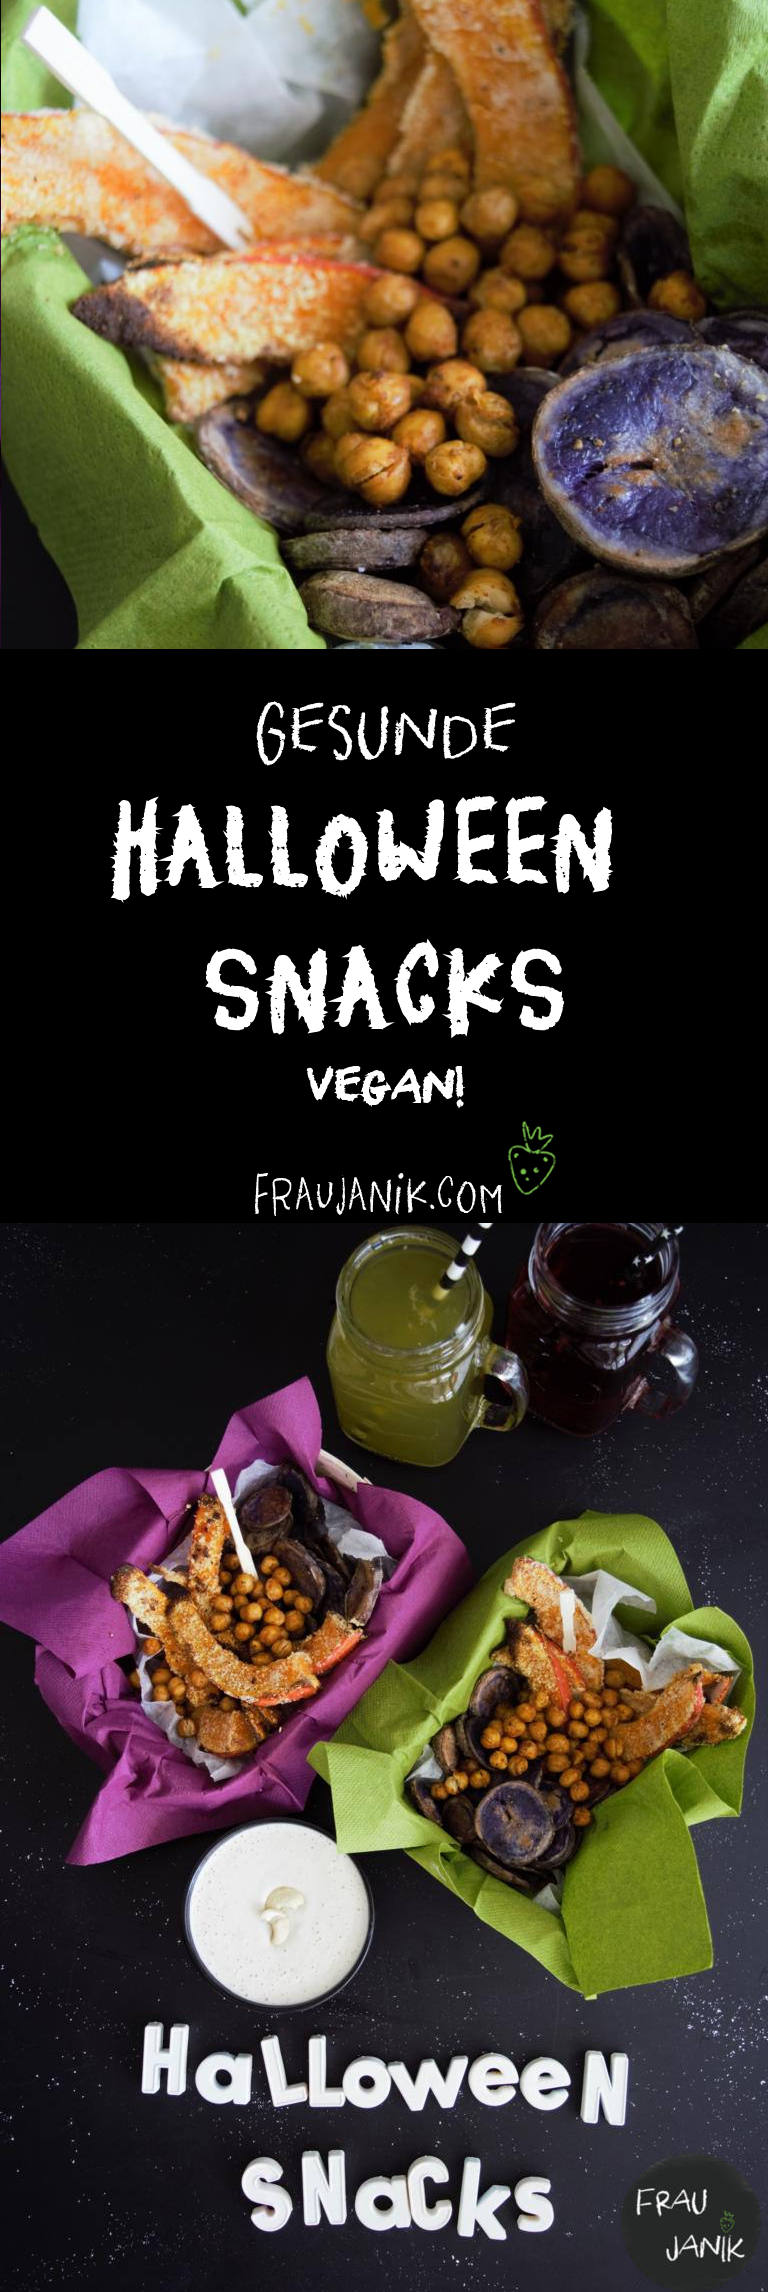 Halloween Snacks, vegan